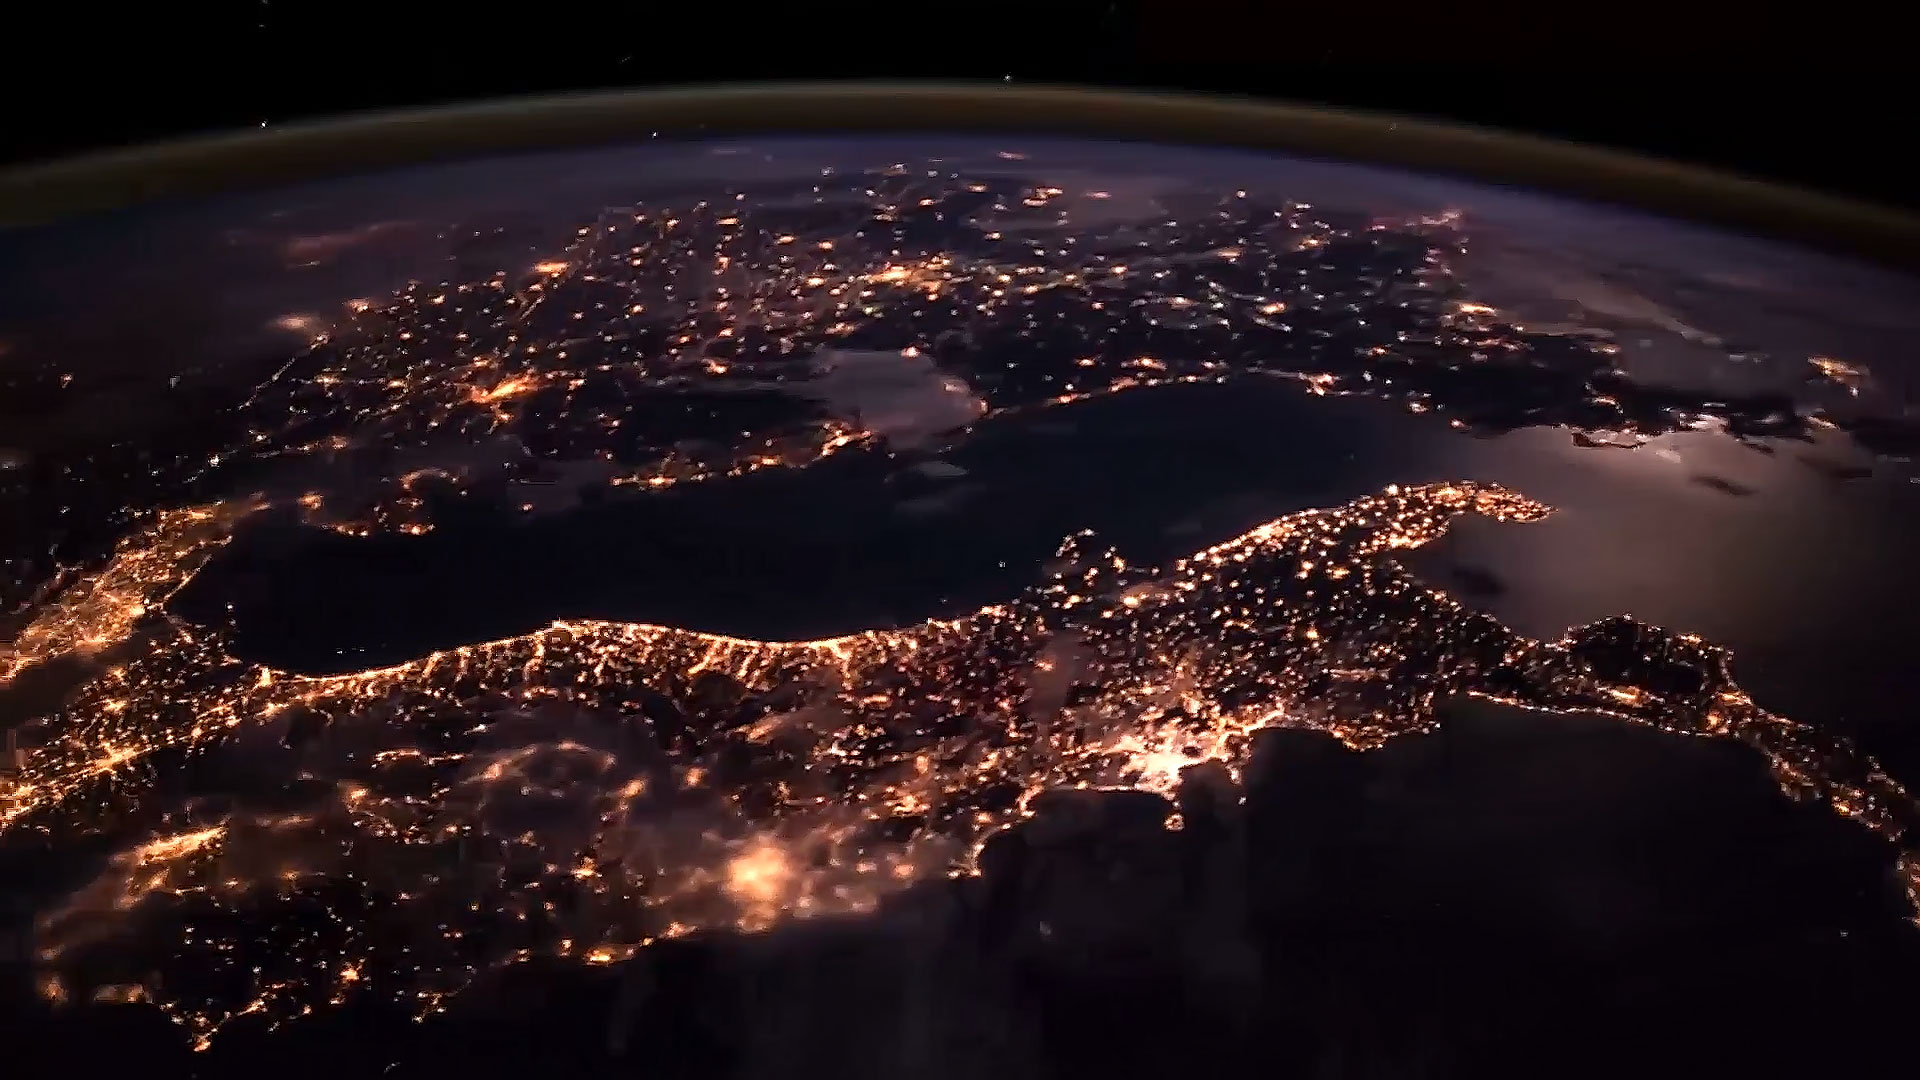 Обои реальном времени. Снимки земли из космоса. Ночная земля. Планета земля вид из космоса. Красивый вид из космоса.